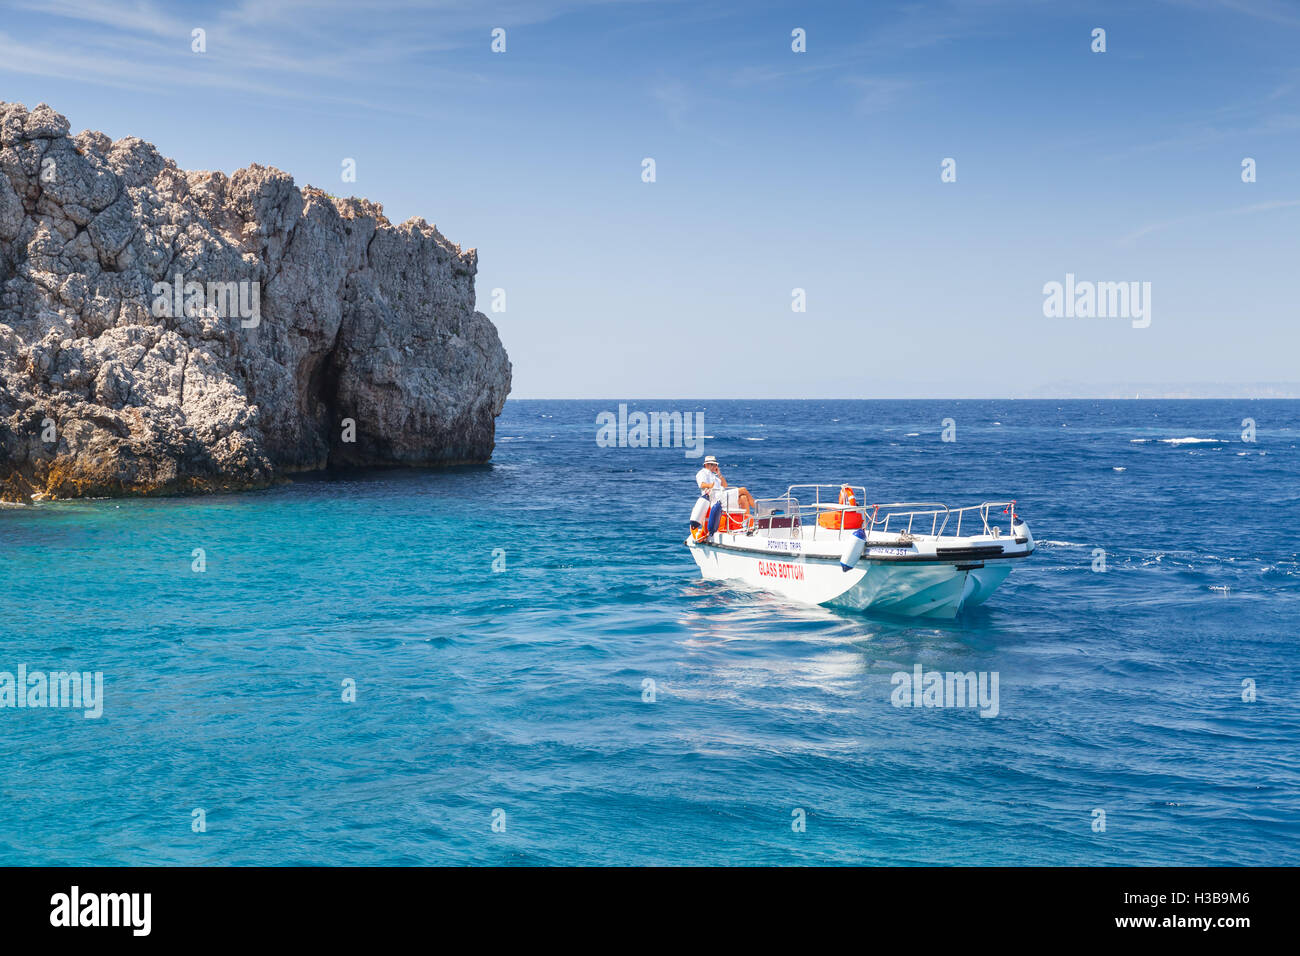 Boat skipper immagini e fotografie stock ad alta risoluzione - Alamy